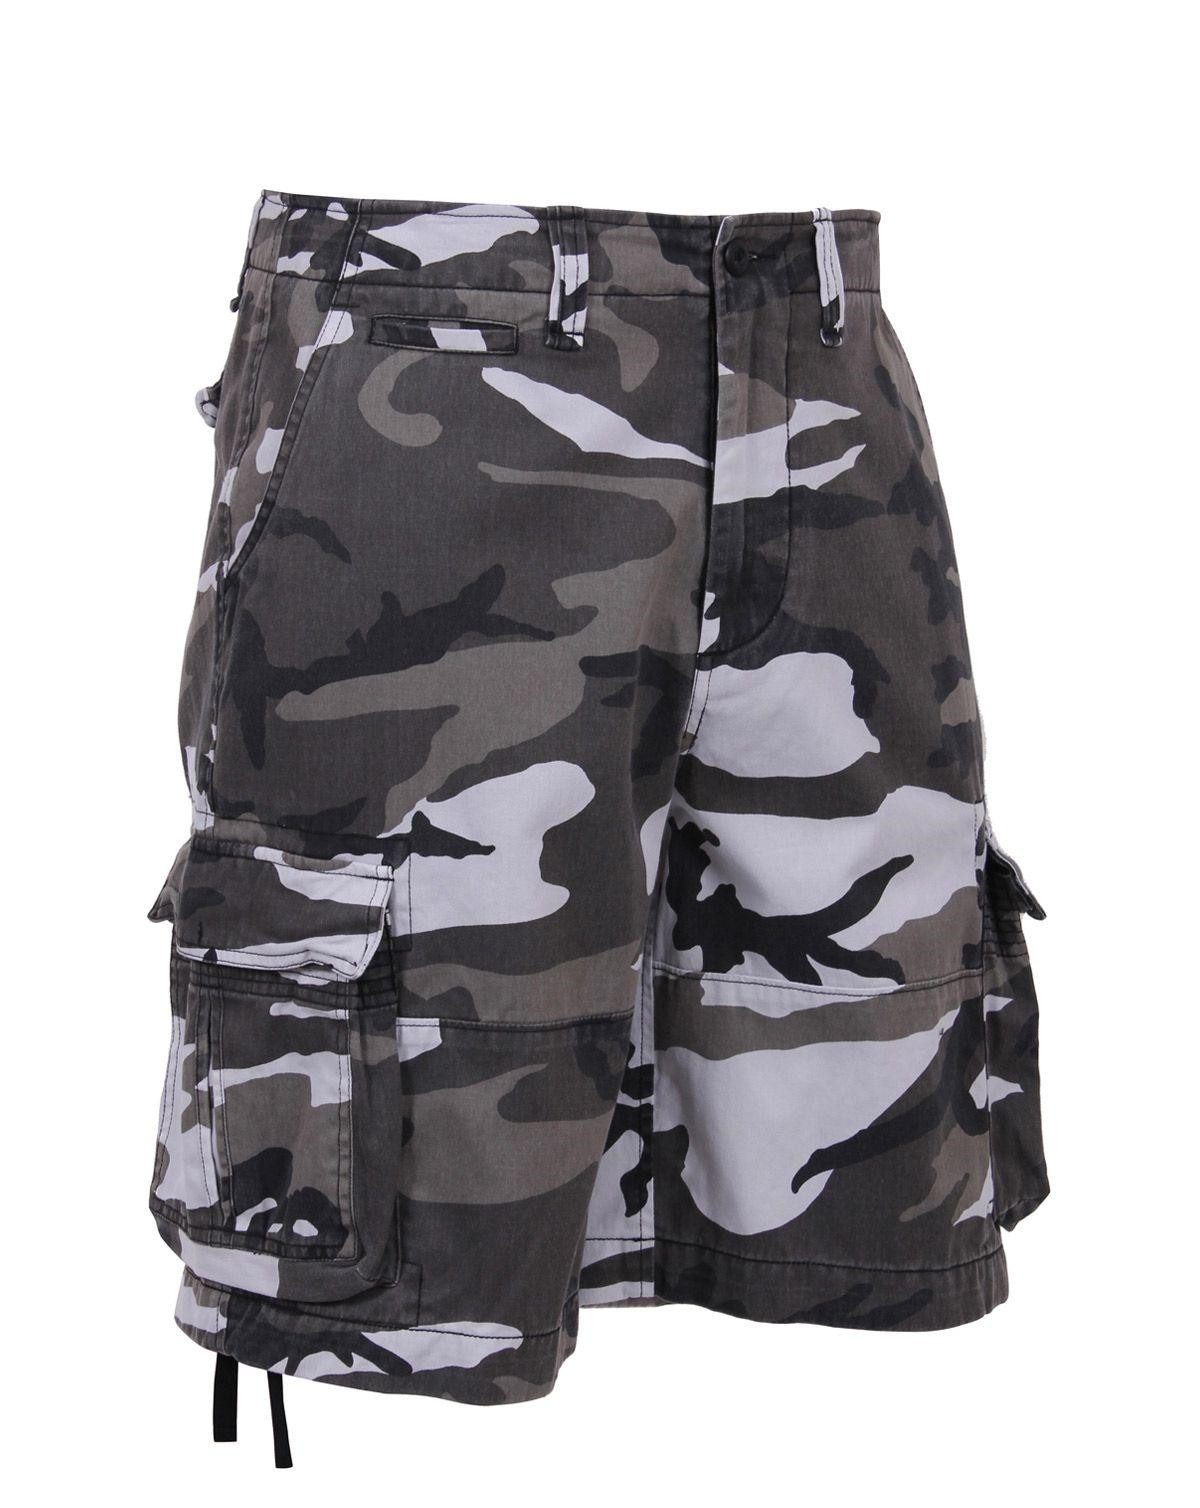 Rothco Camo Cargo Shorts (Urban Camo, XL)